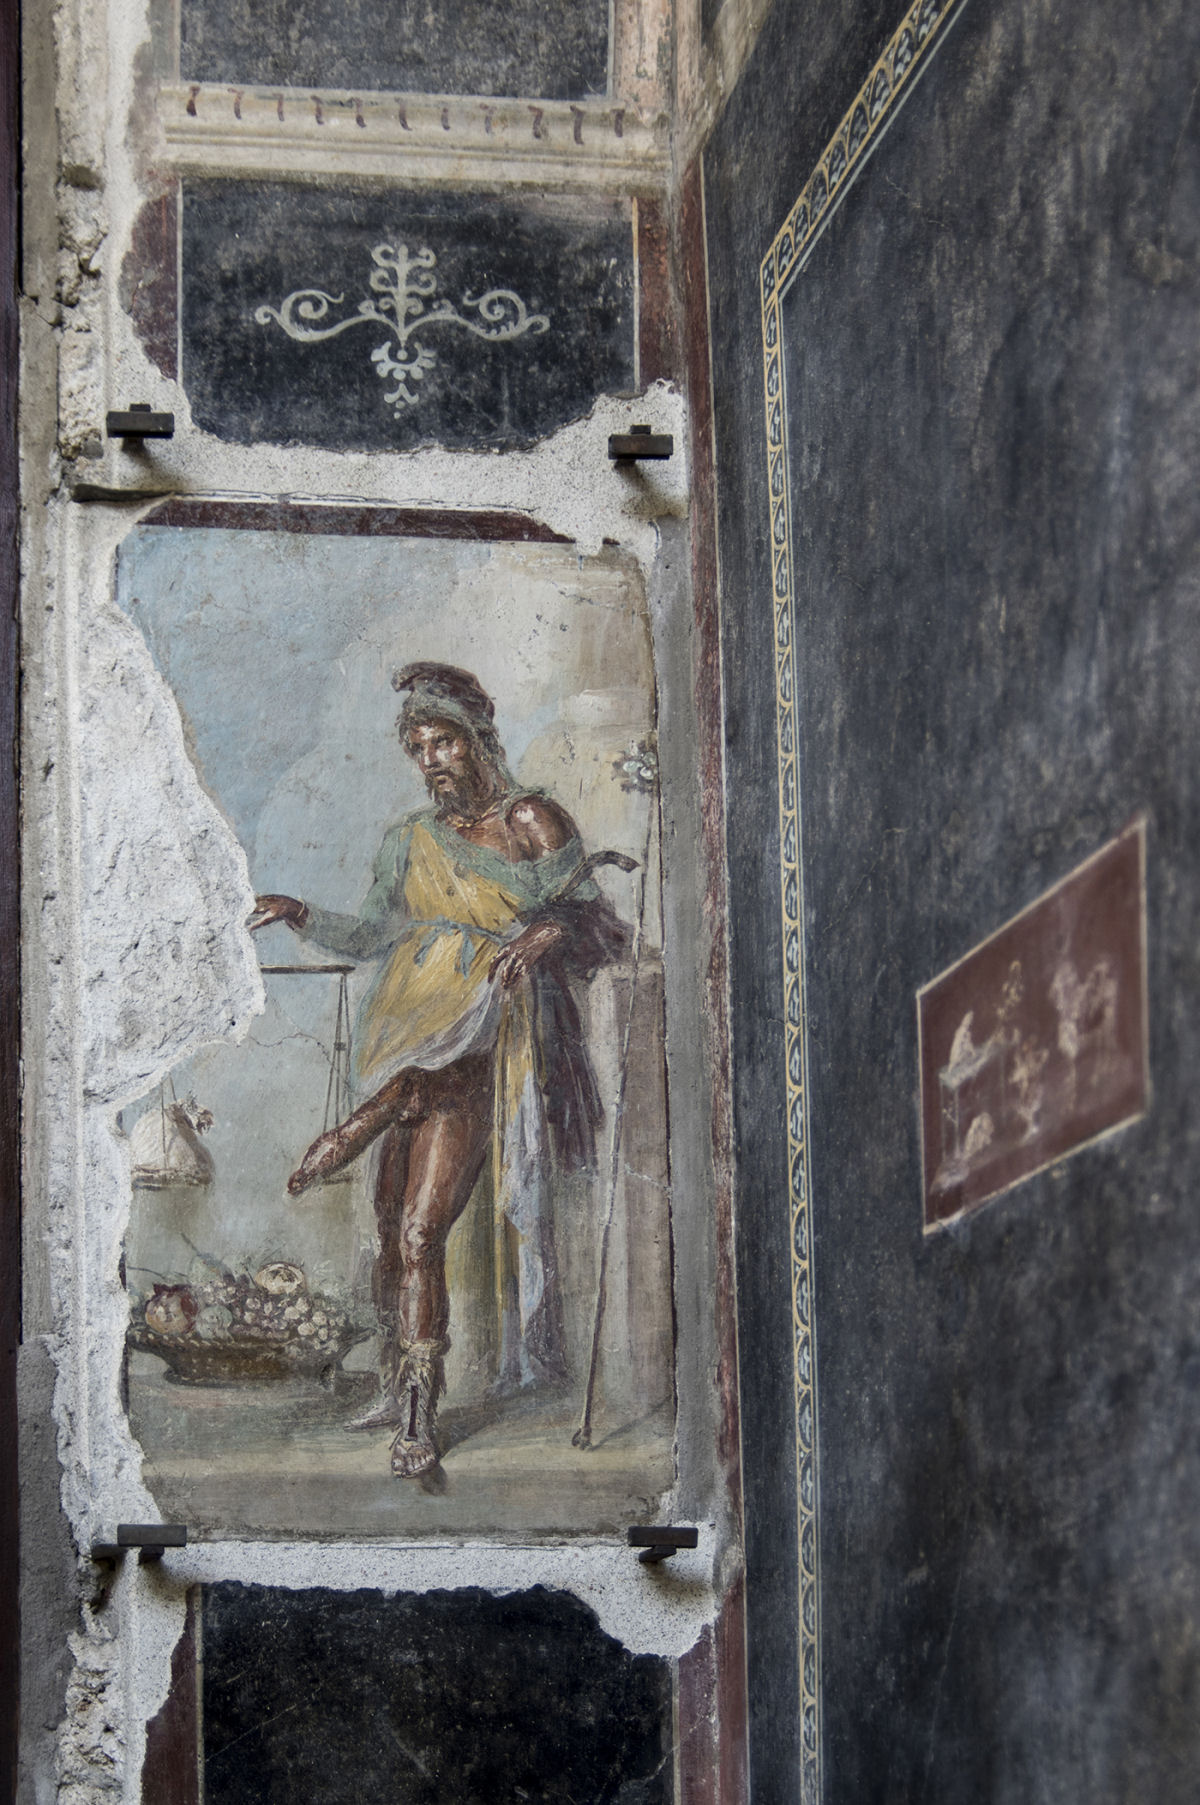 Tour em vdeo da restaurada Casa dos Vettii, em Pompeia